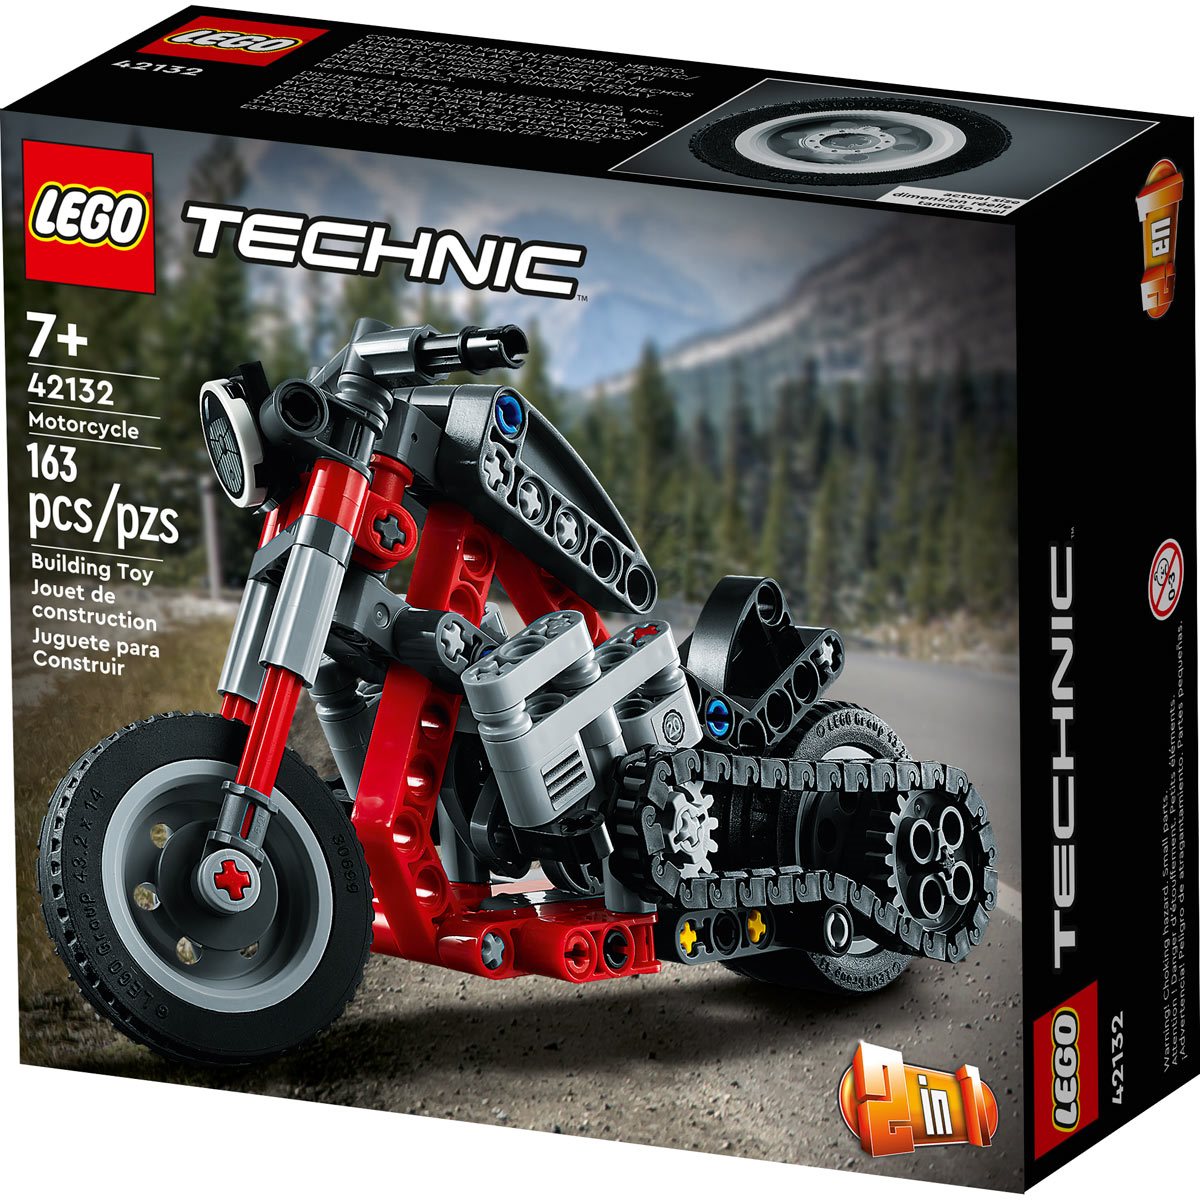 LEGO 42132 - LEGO TECHNIC MOTORCYCLE - BRAND NEW AND SEALED 5702017117096  on eBid United States